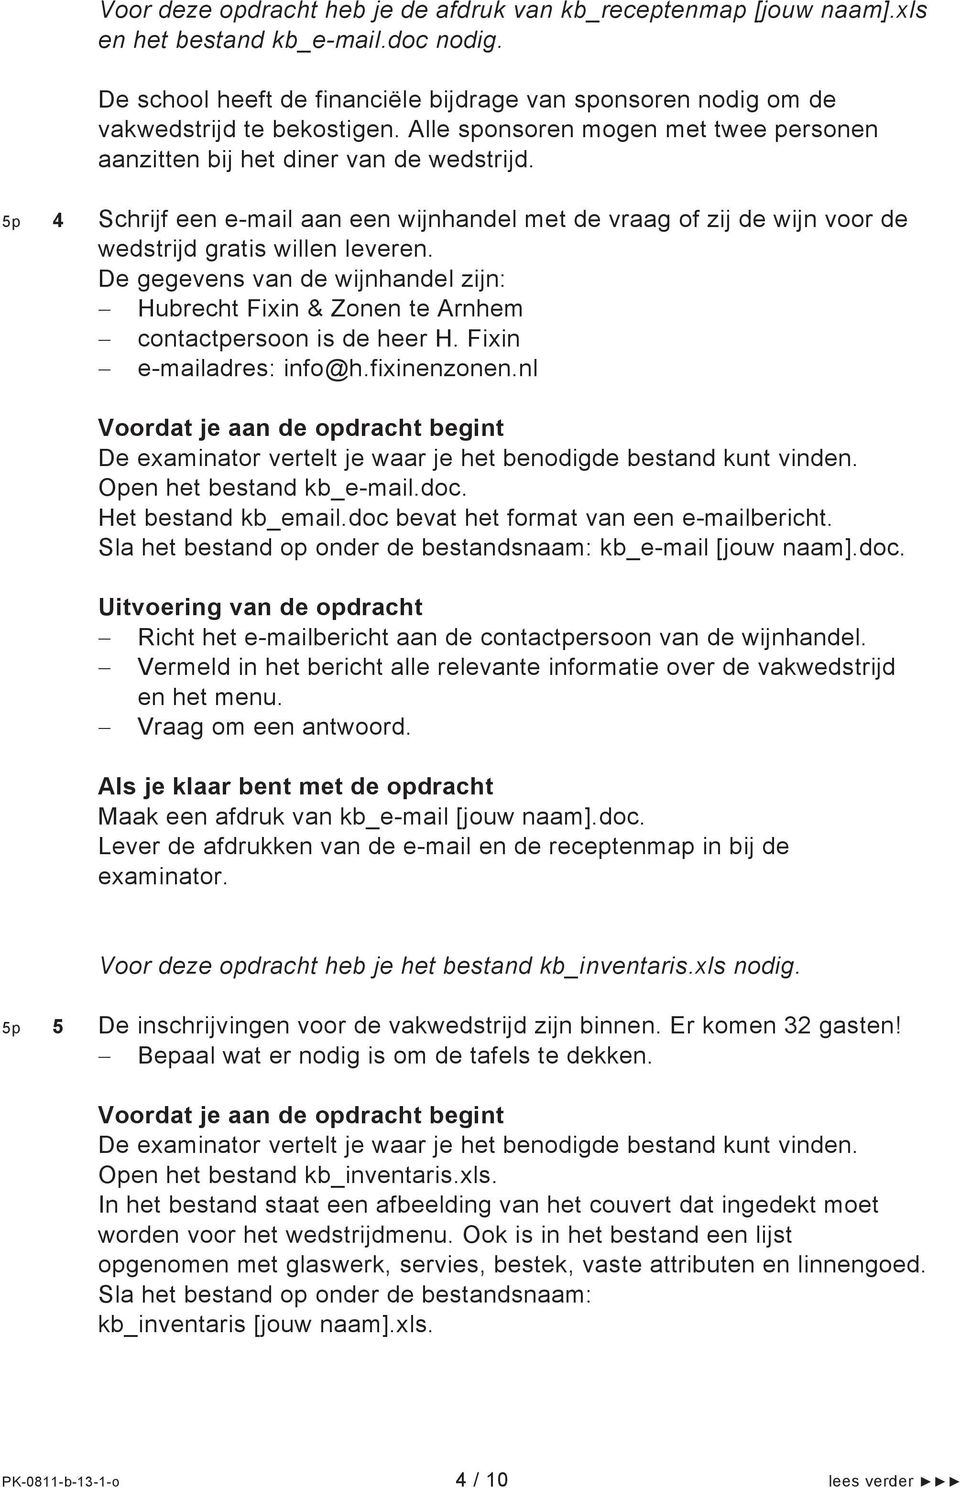 De gegevens van de wijnhandel zijn: Hubrecht Fixin & Zonen te Arnhem contactpersoon is de heer H. Fixin e-mailadres: info@h.fixinenzonen.